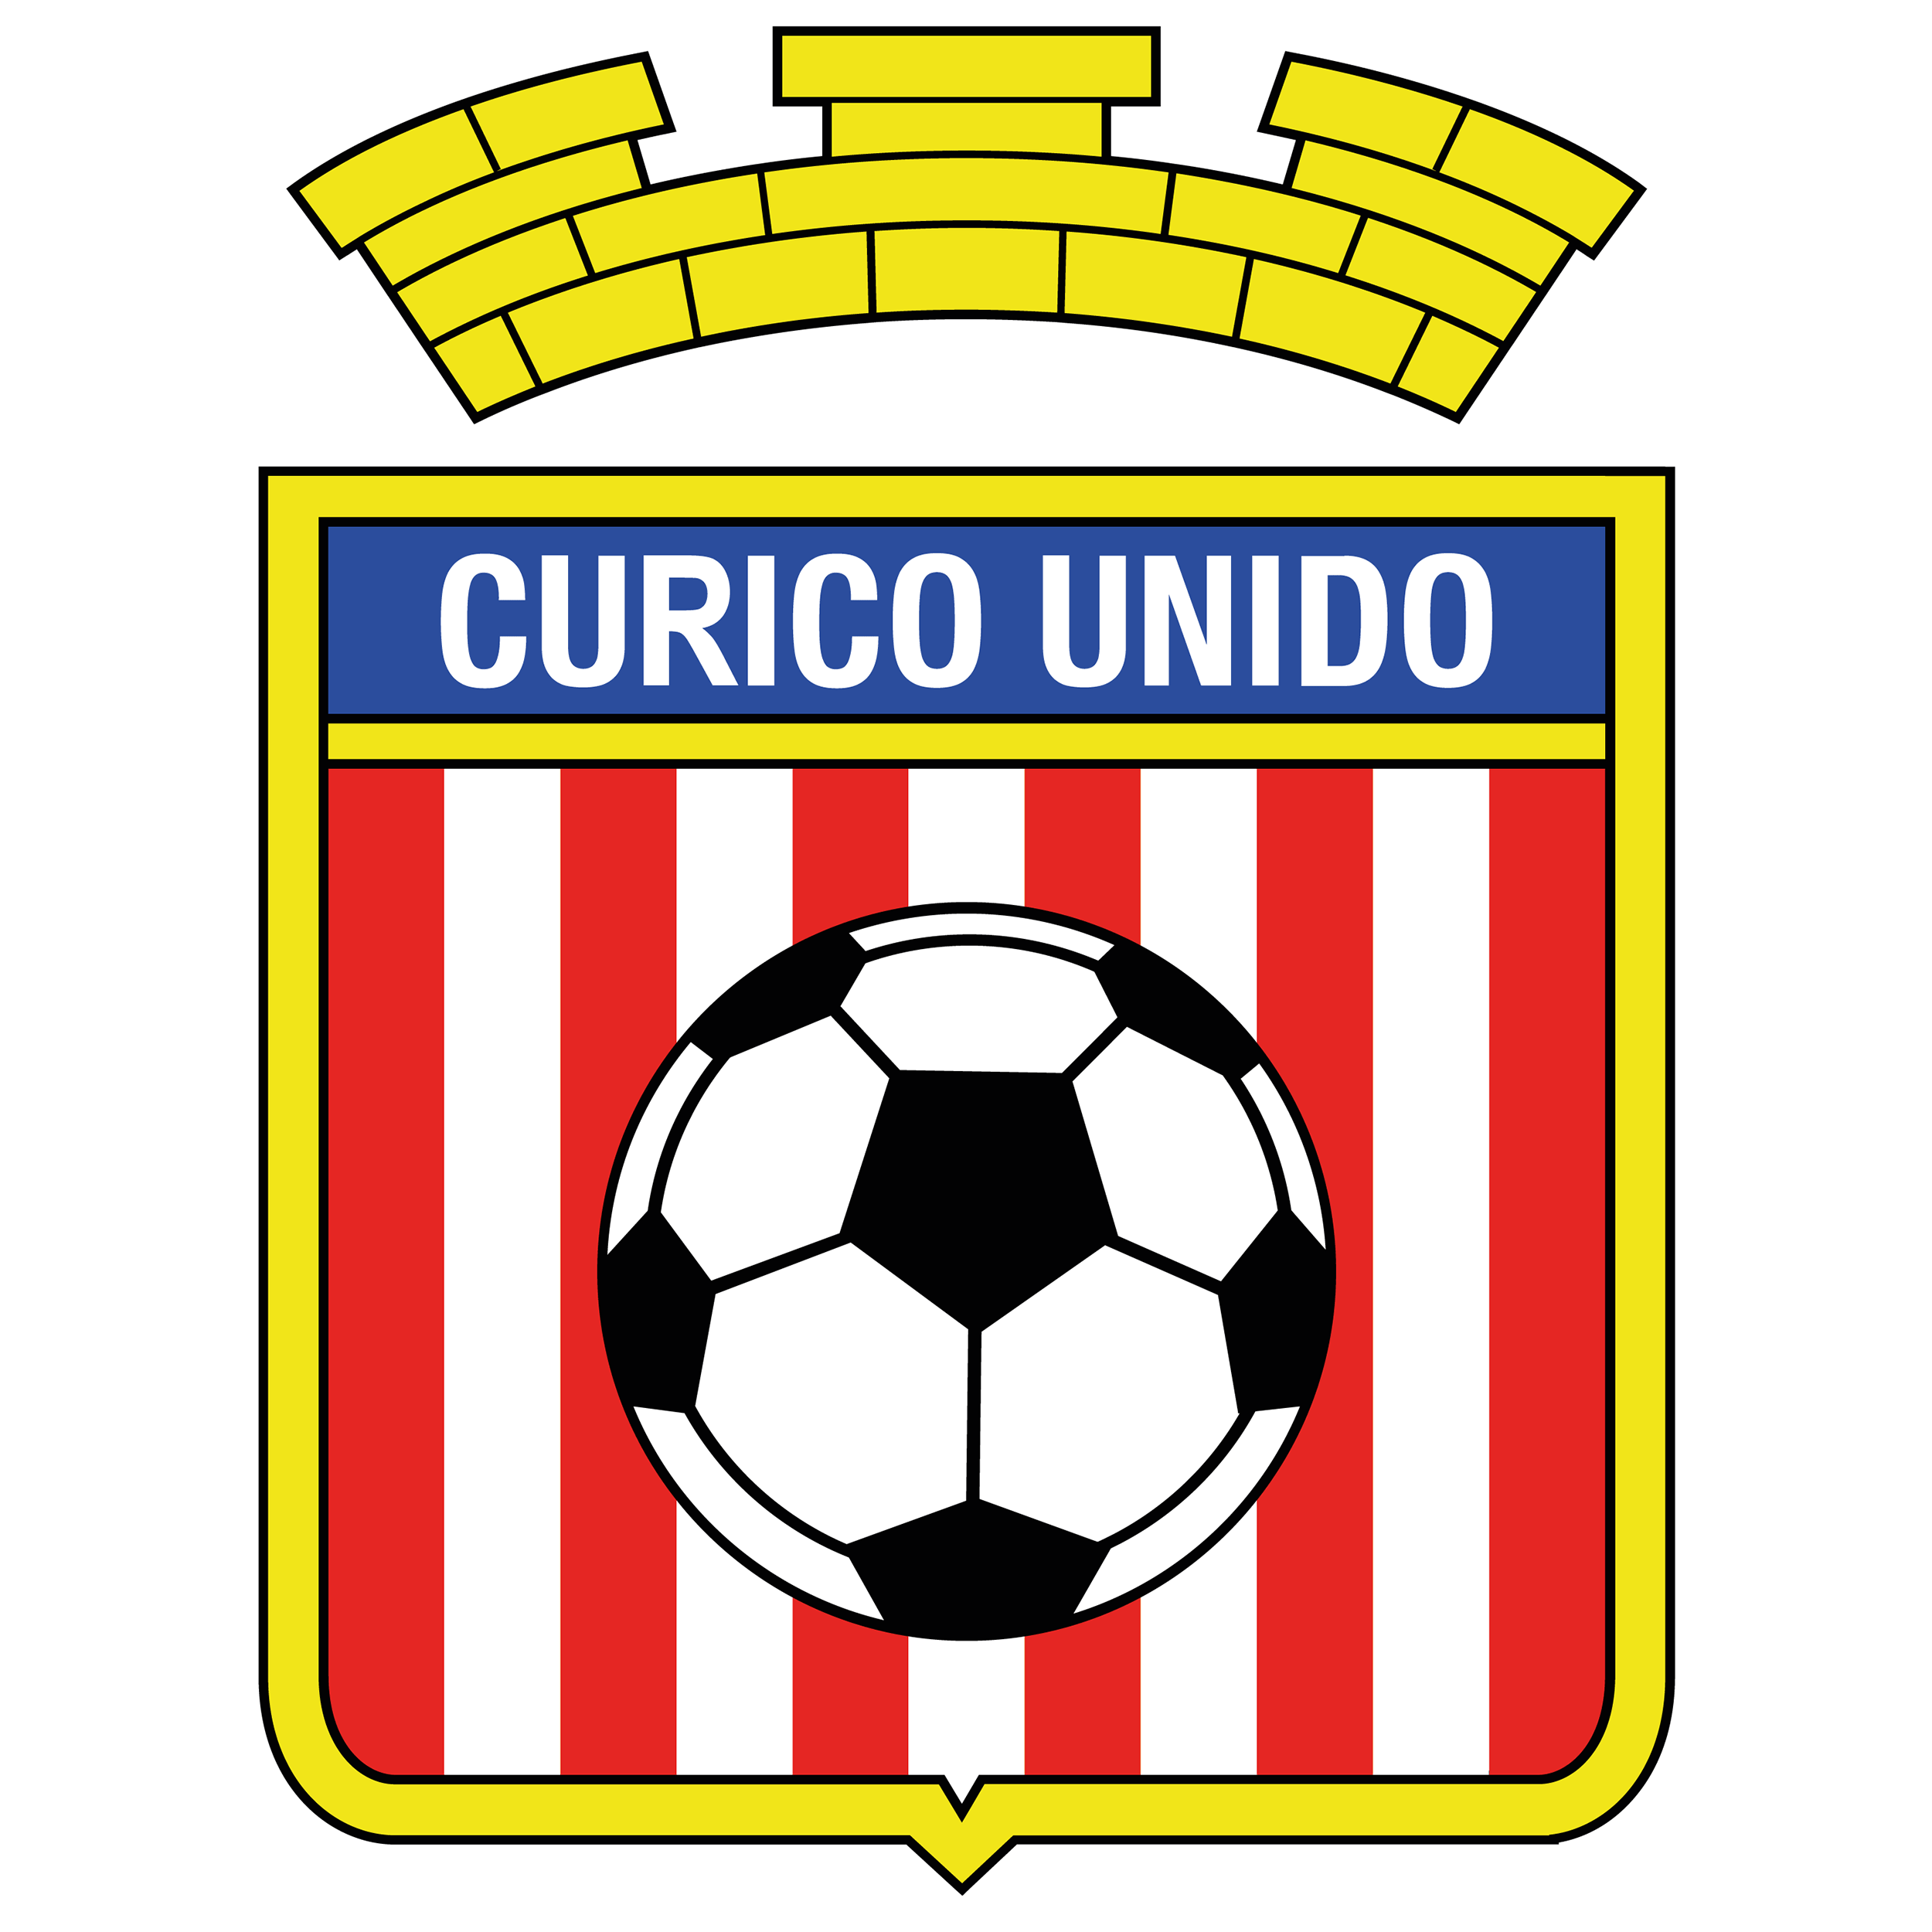 Unido Logo - Curicó Unido Logo